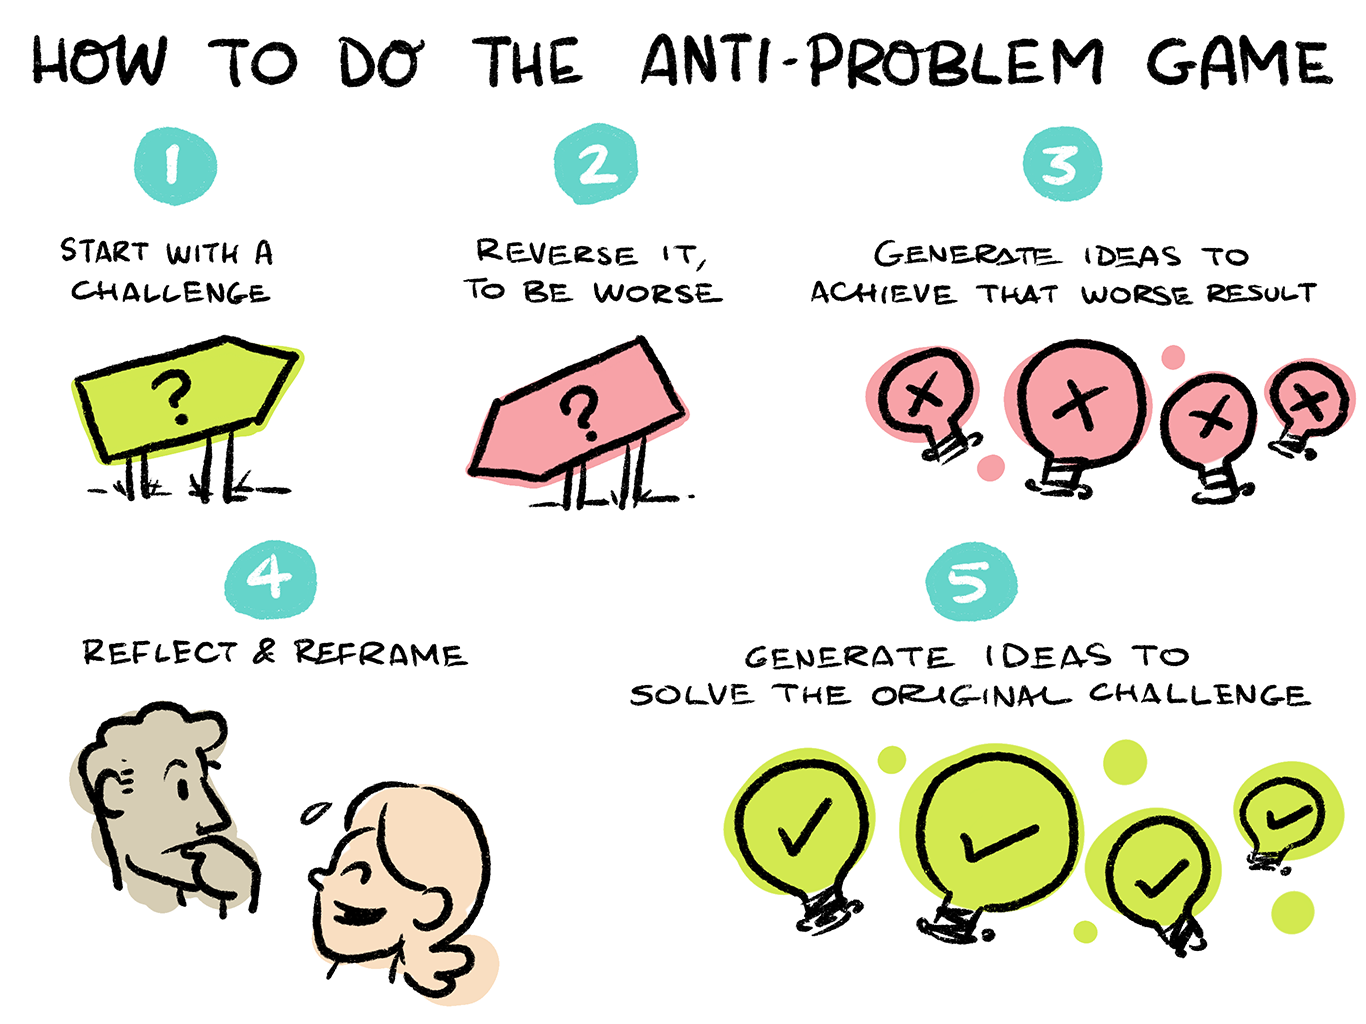 A diagram explaining how to do the anti-problem game